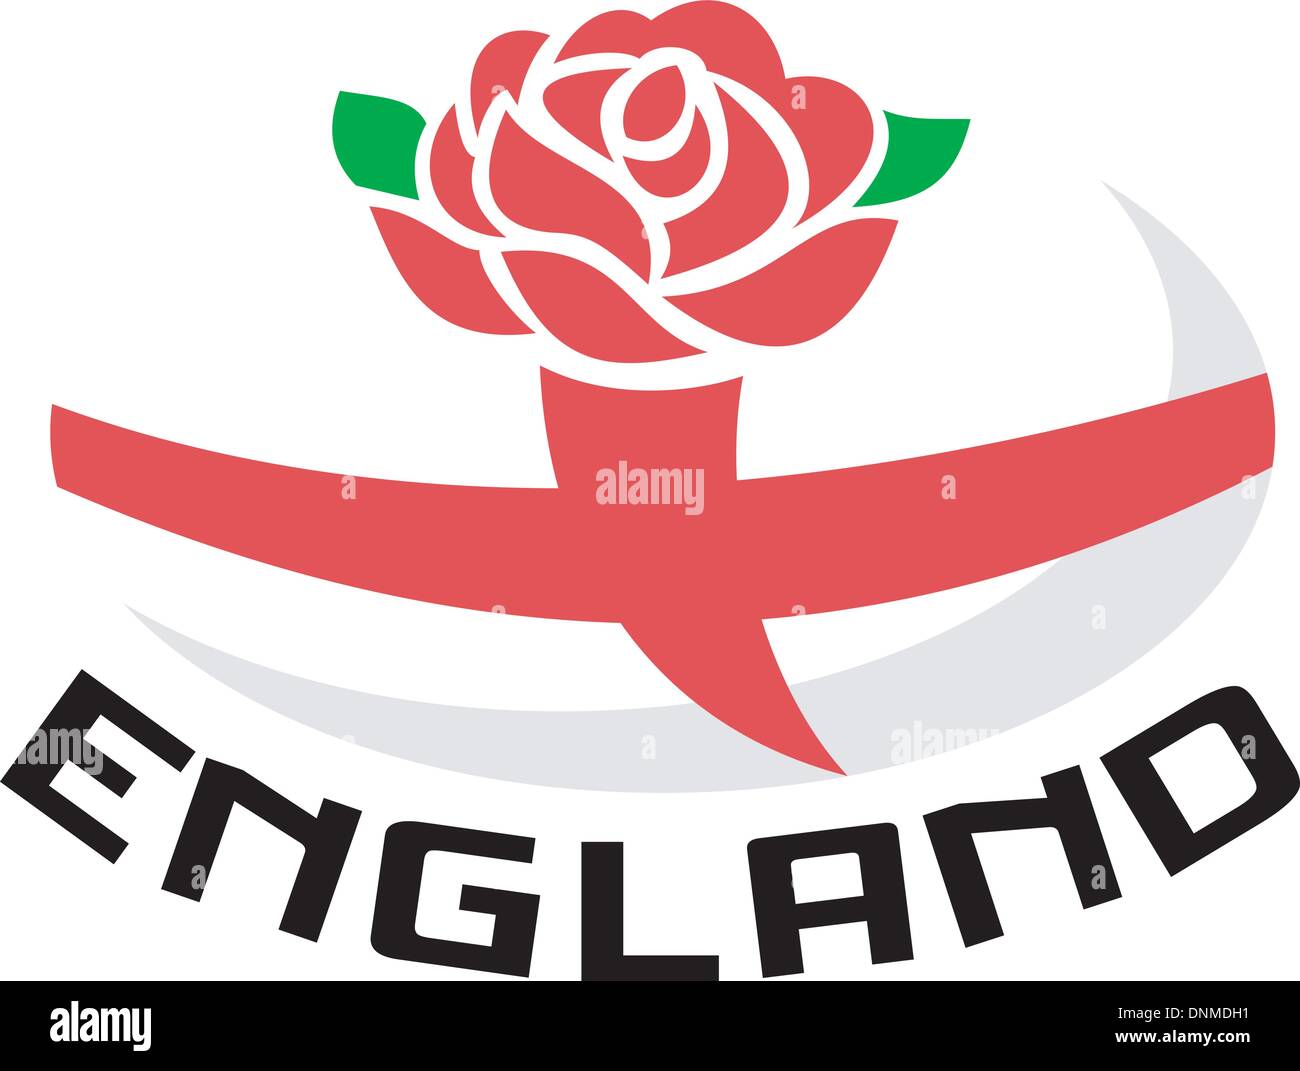 Abbildung von einem roten englischen rose mit Flagge von England innen Rugby-Ball und Worte "England" Stock Vektor